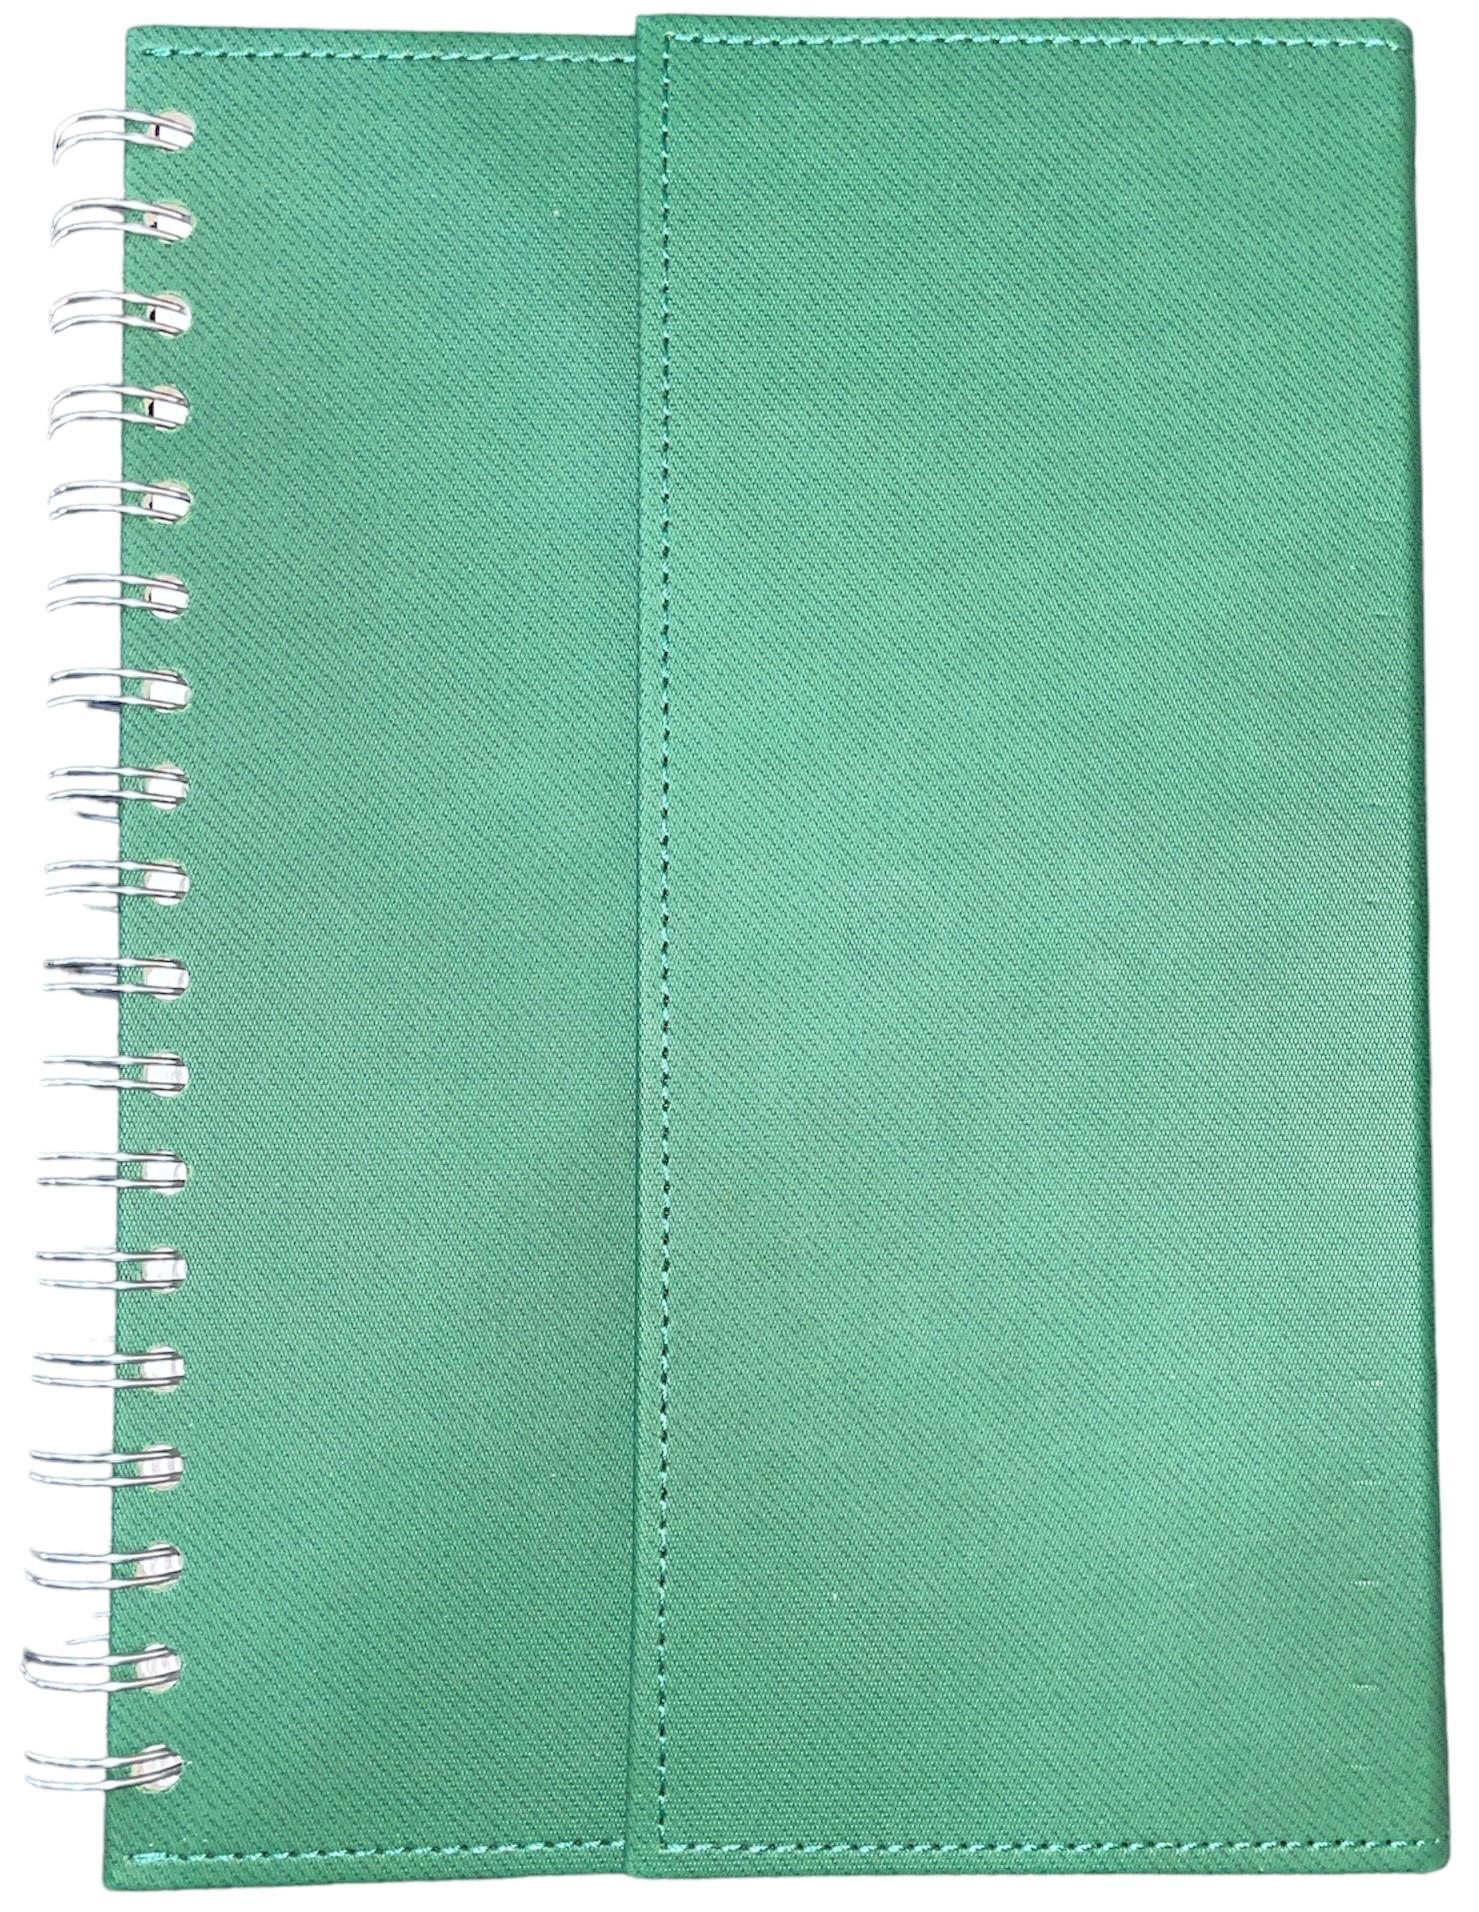 Notebook Premium cuaderno anillado